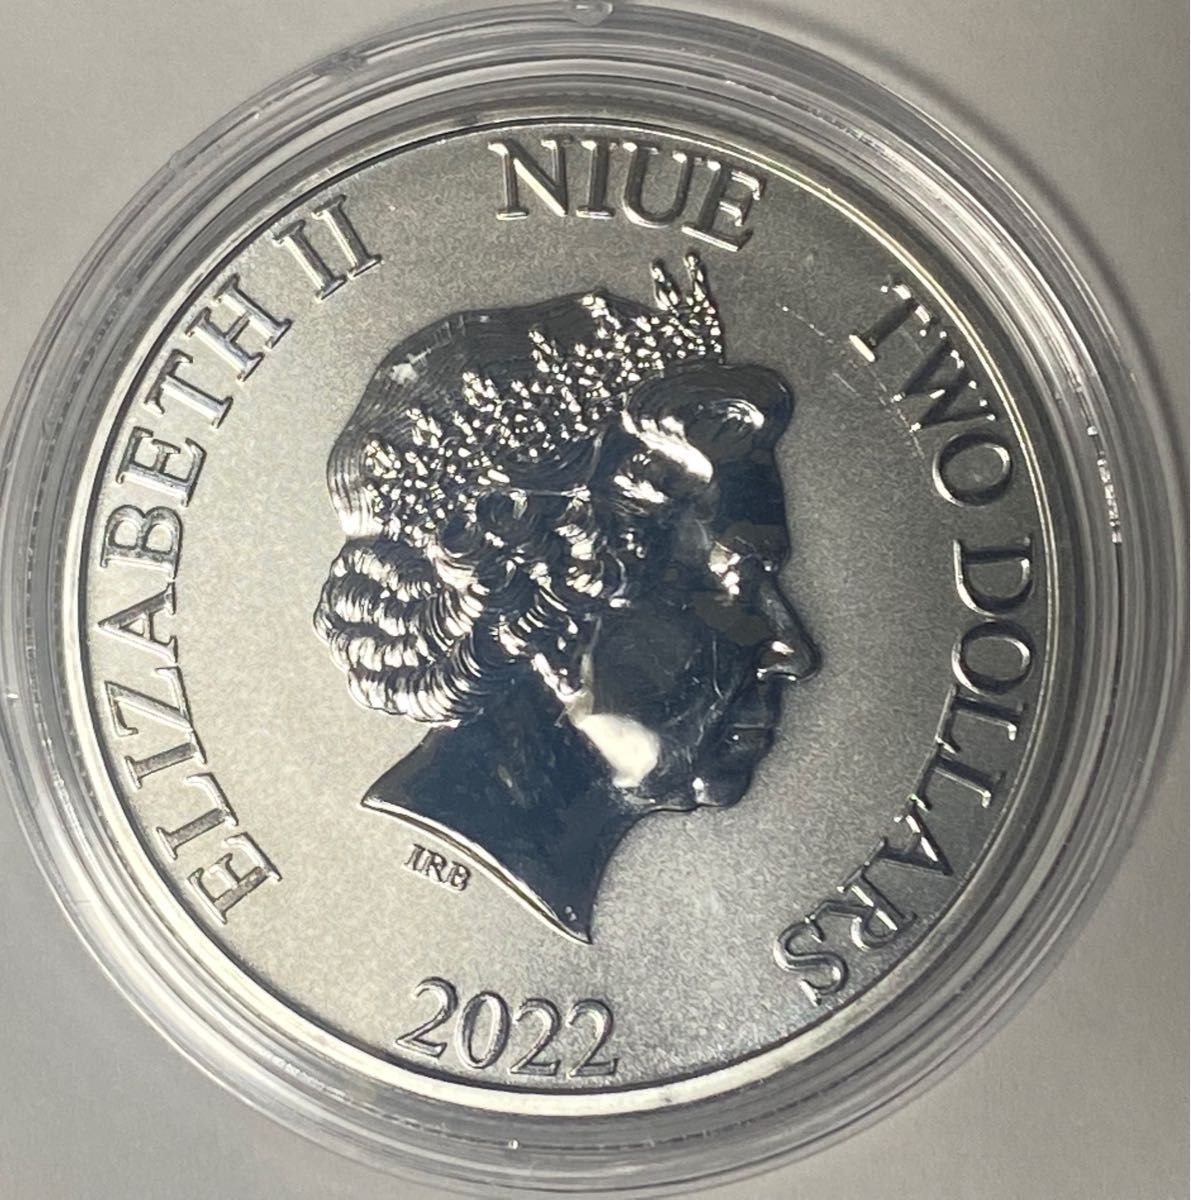 カリブ海 2022 - モントセラト ウミガメ 1オンス銀貨 500枚発行-